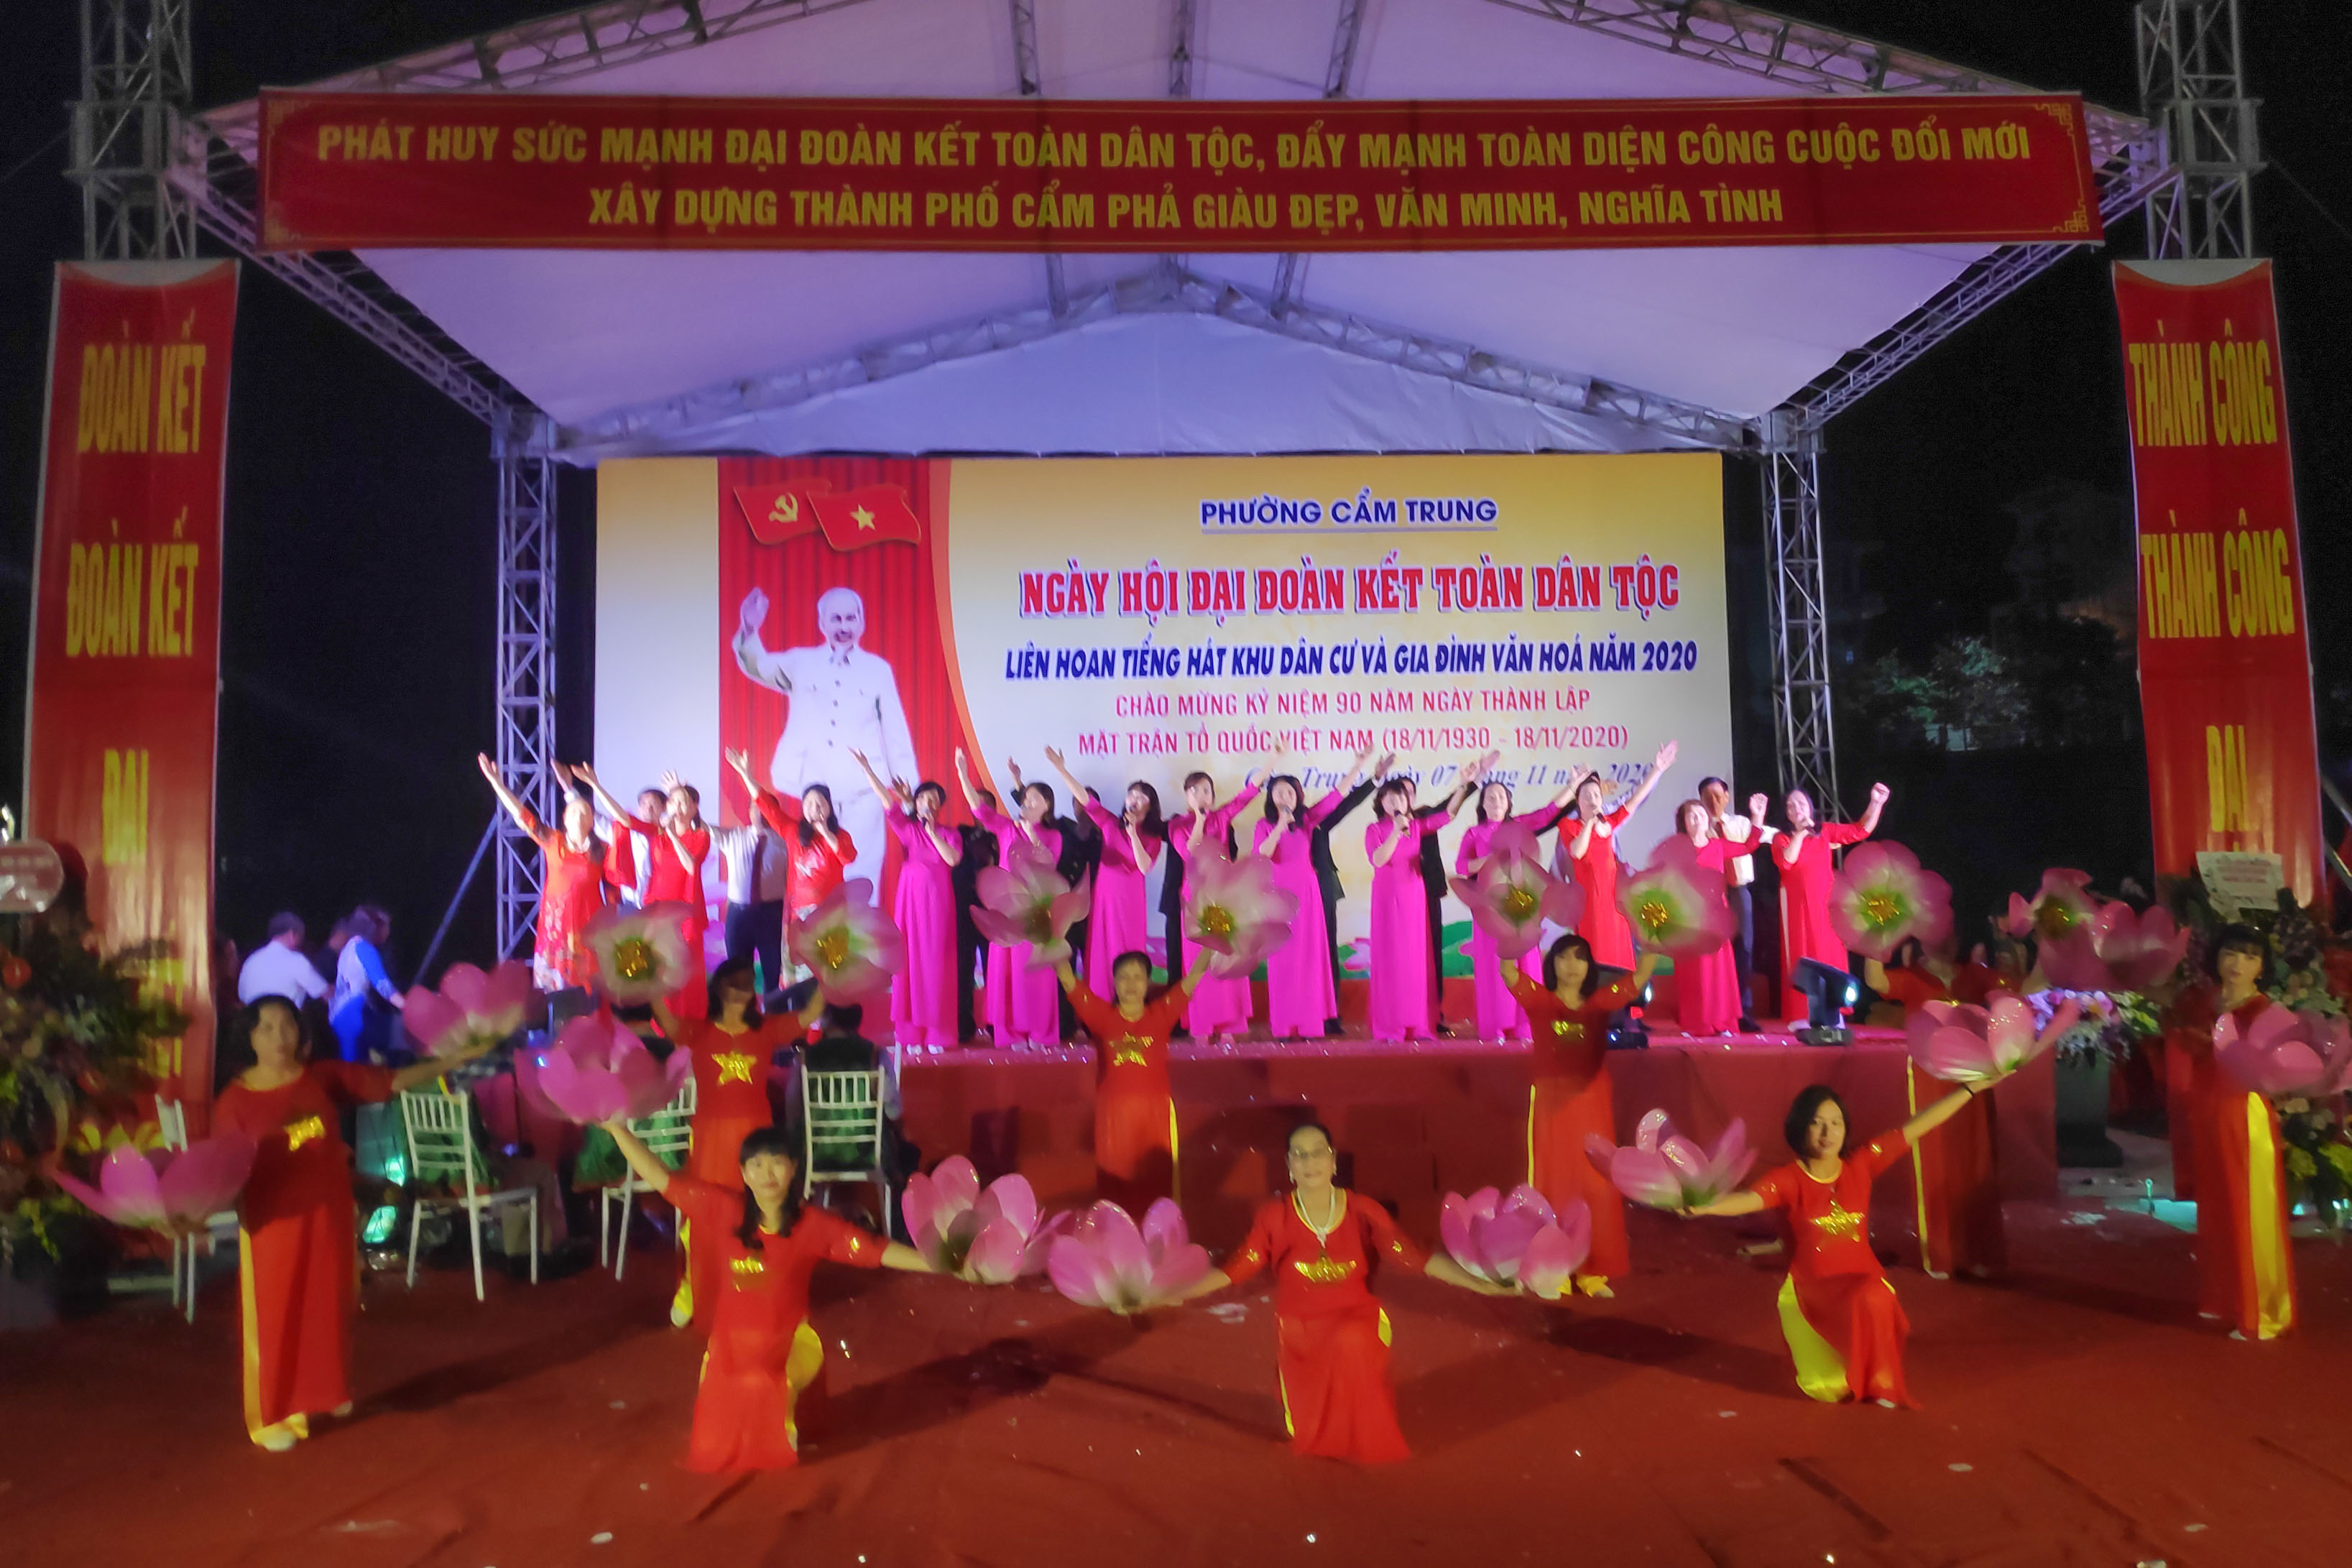 Liên hoan Tiếng hát khu dân cư và gia đình văn hóa phường Cẩm Trung (TP Cẩm Phả), ngày 7/11/2020.